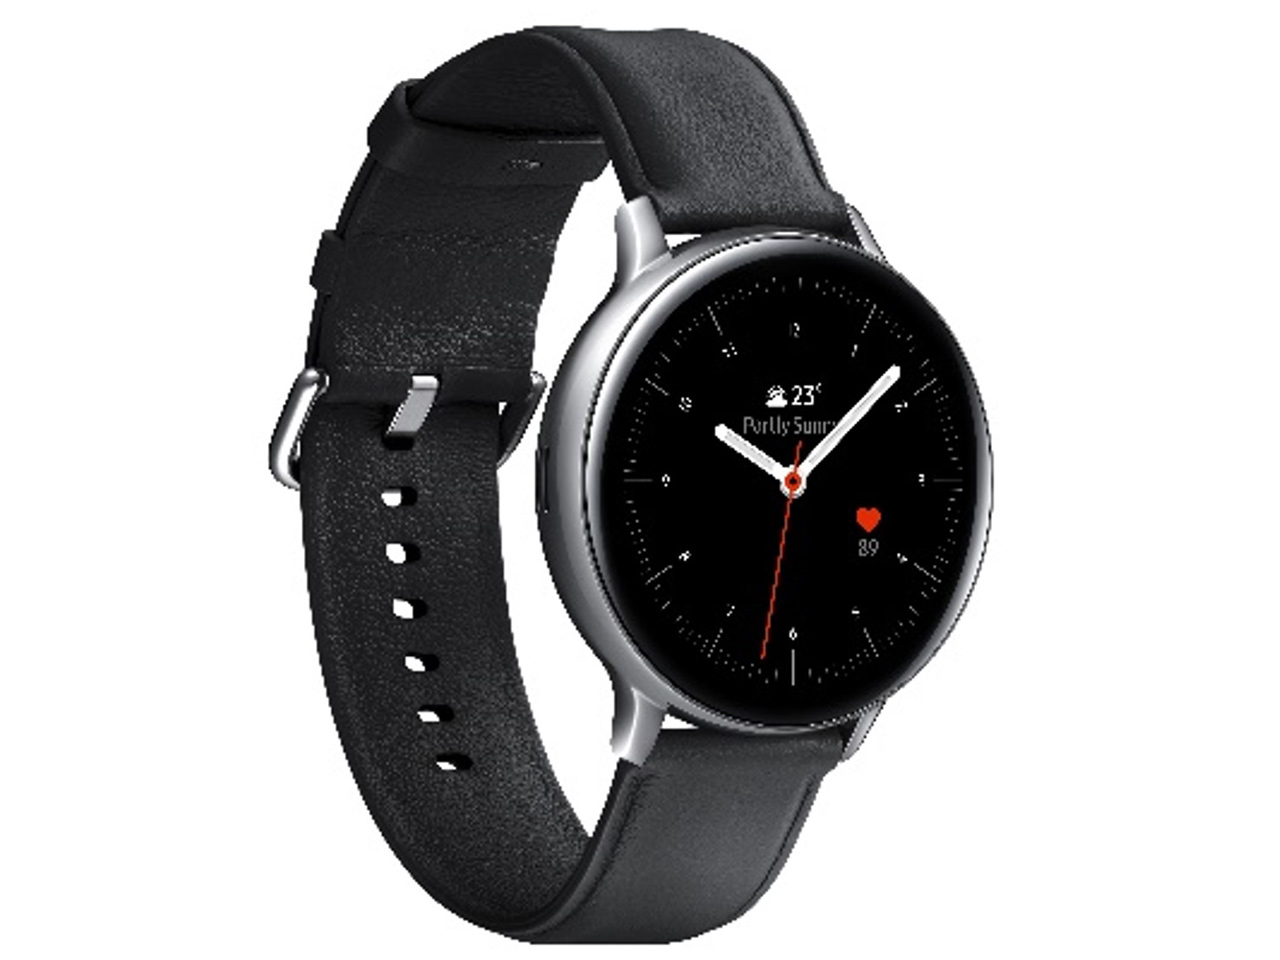 価格.com - Galaxy Watch Active2 44mm の製品画像